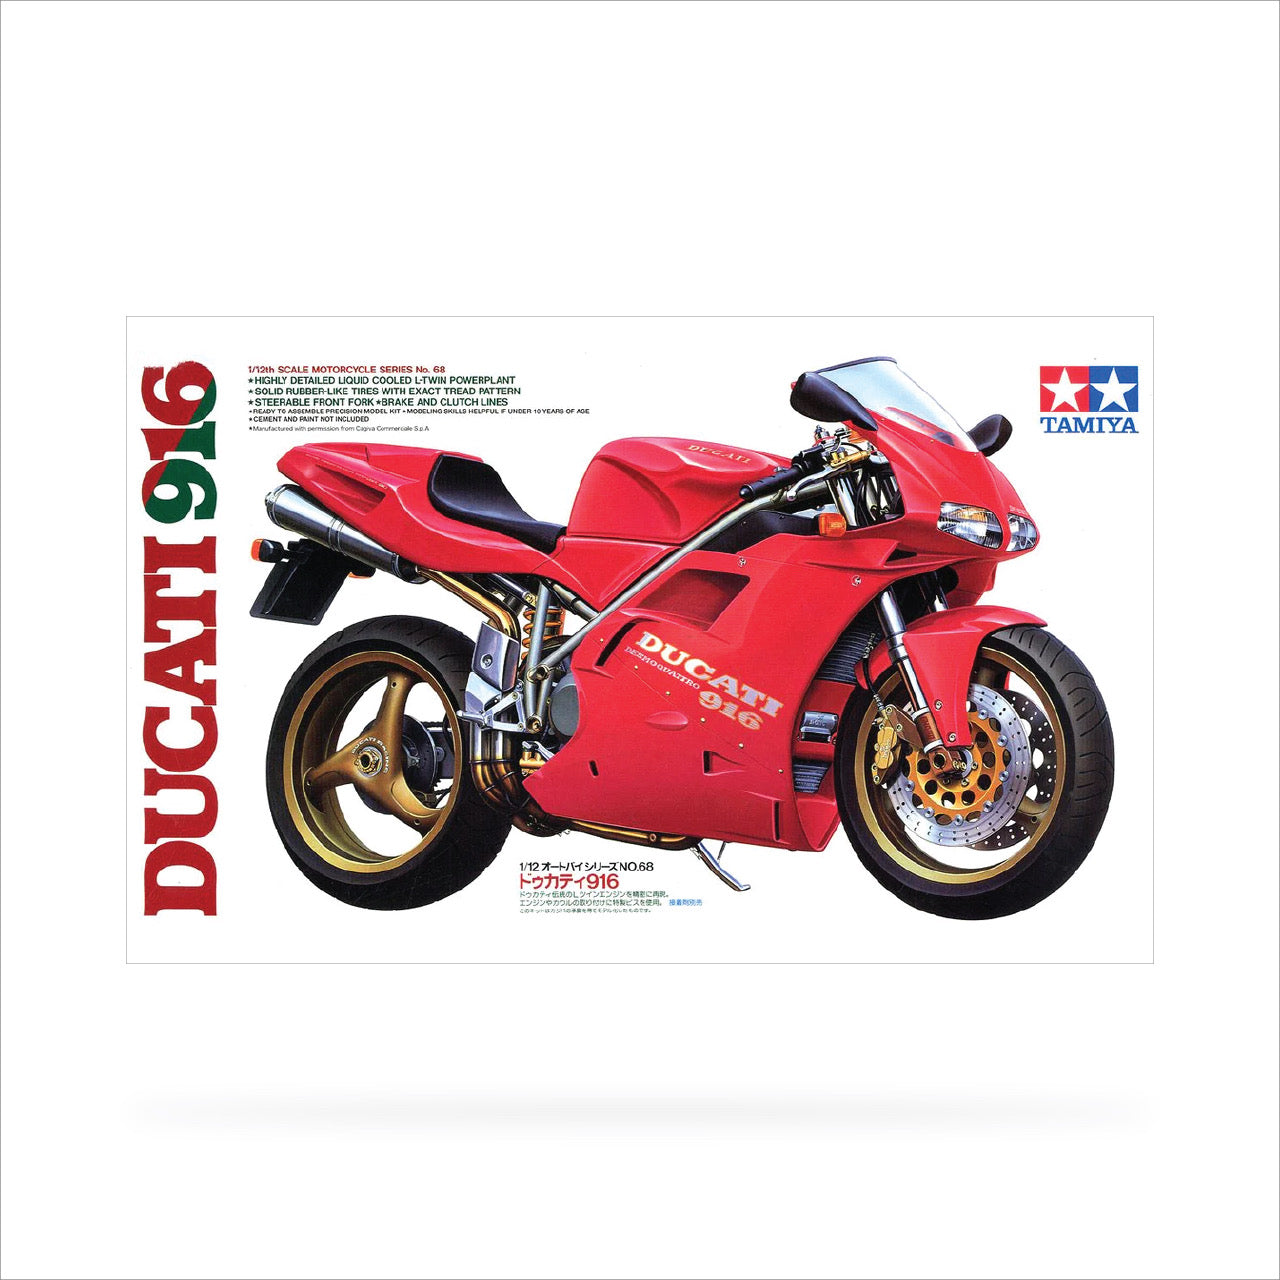 Tamiya 1/12 Ducati 916 (14068)